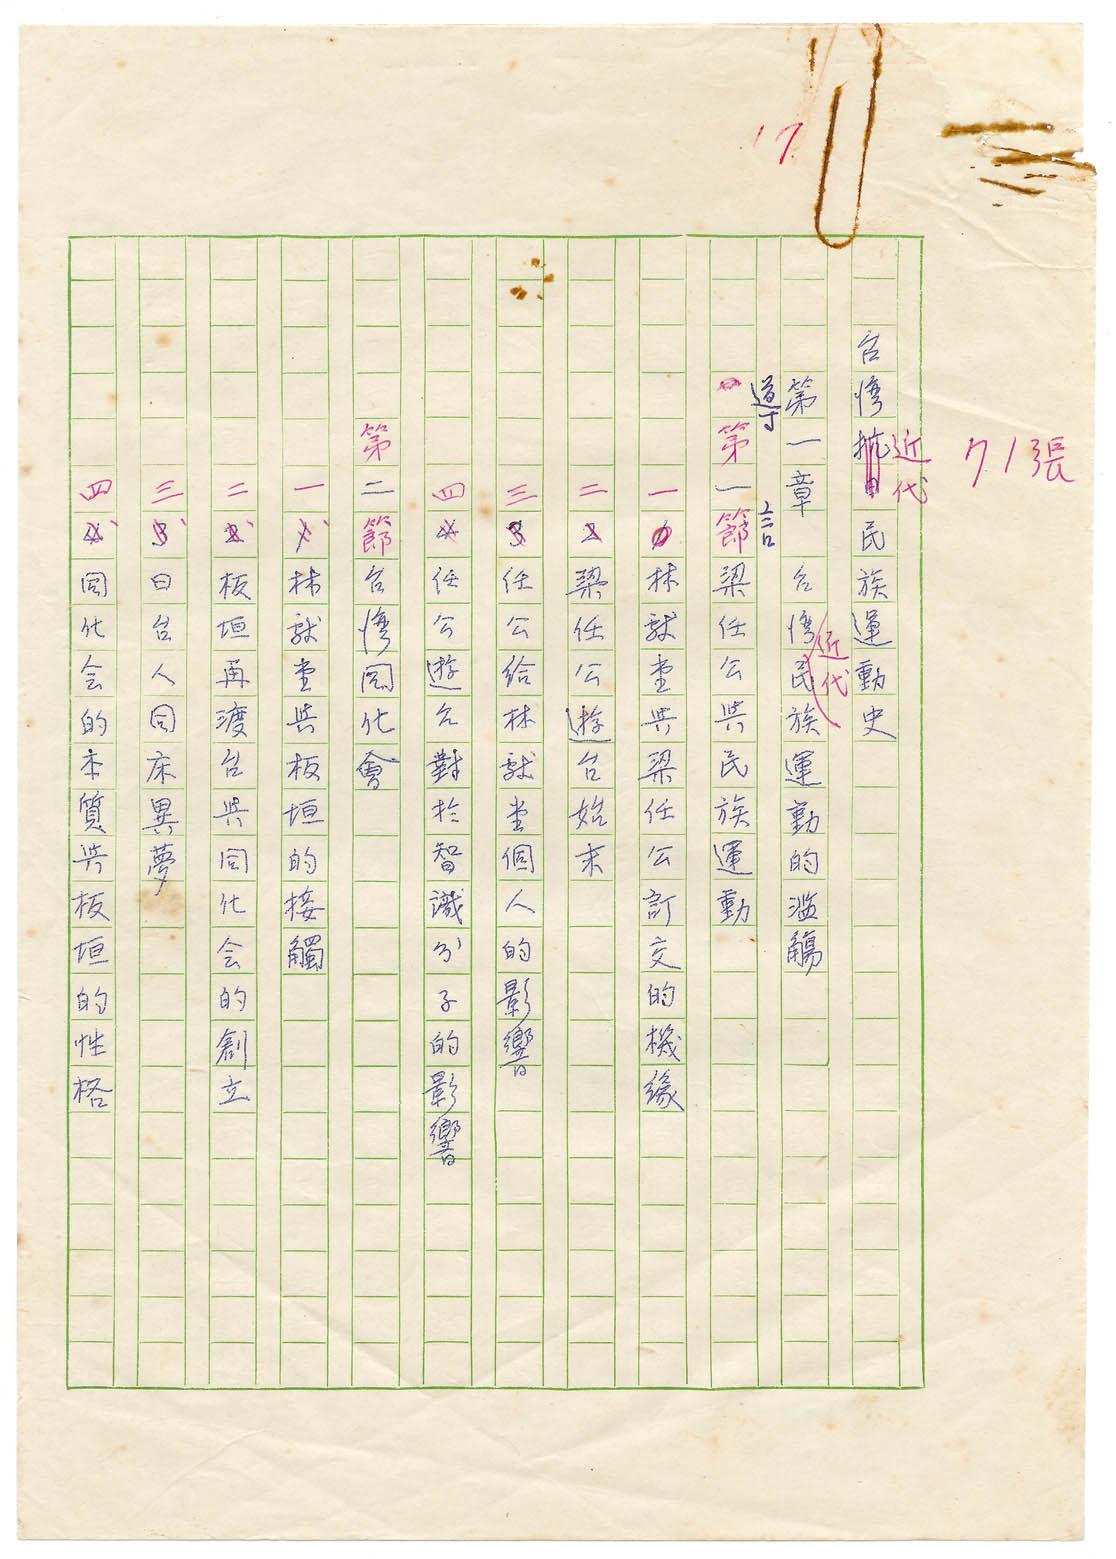 副系列名：台灣近代民族運動史案卷名：序跋件名：目次